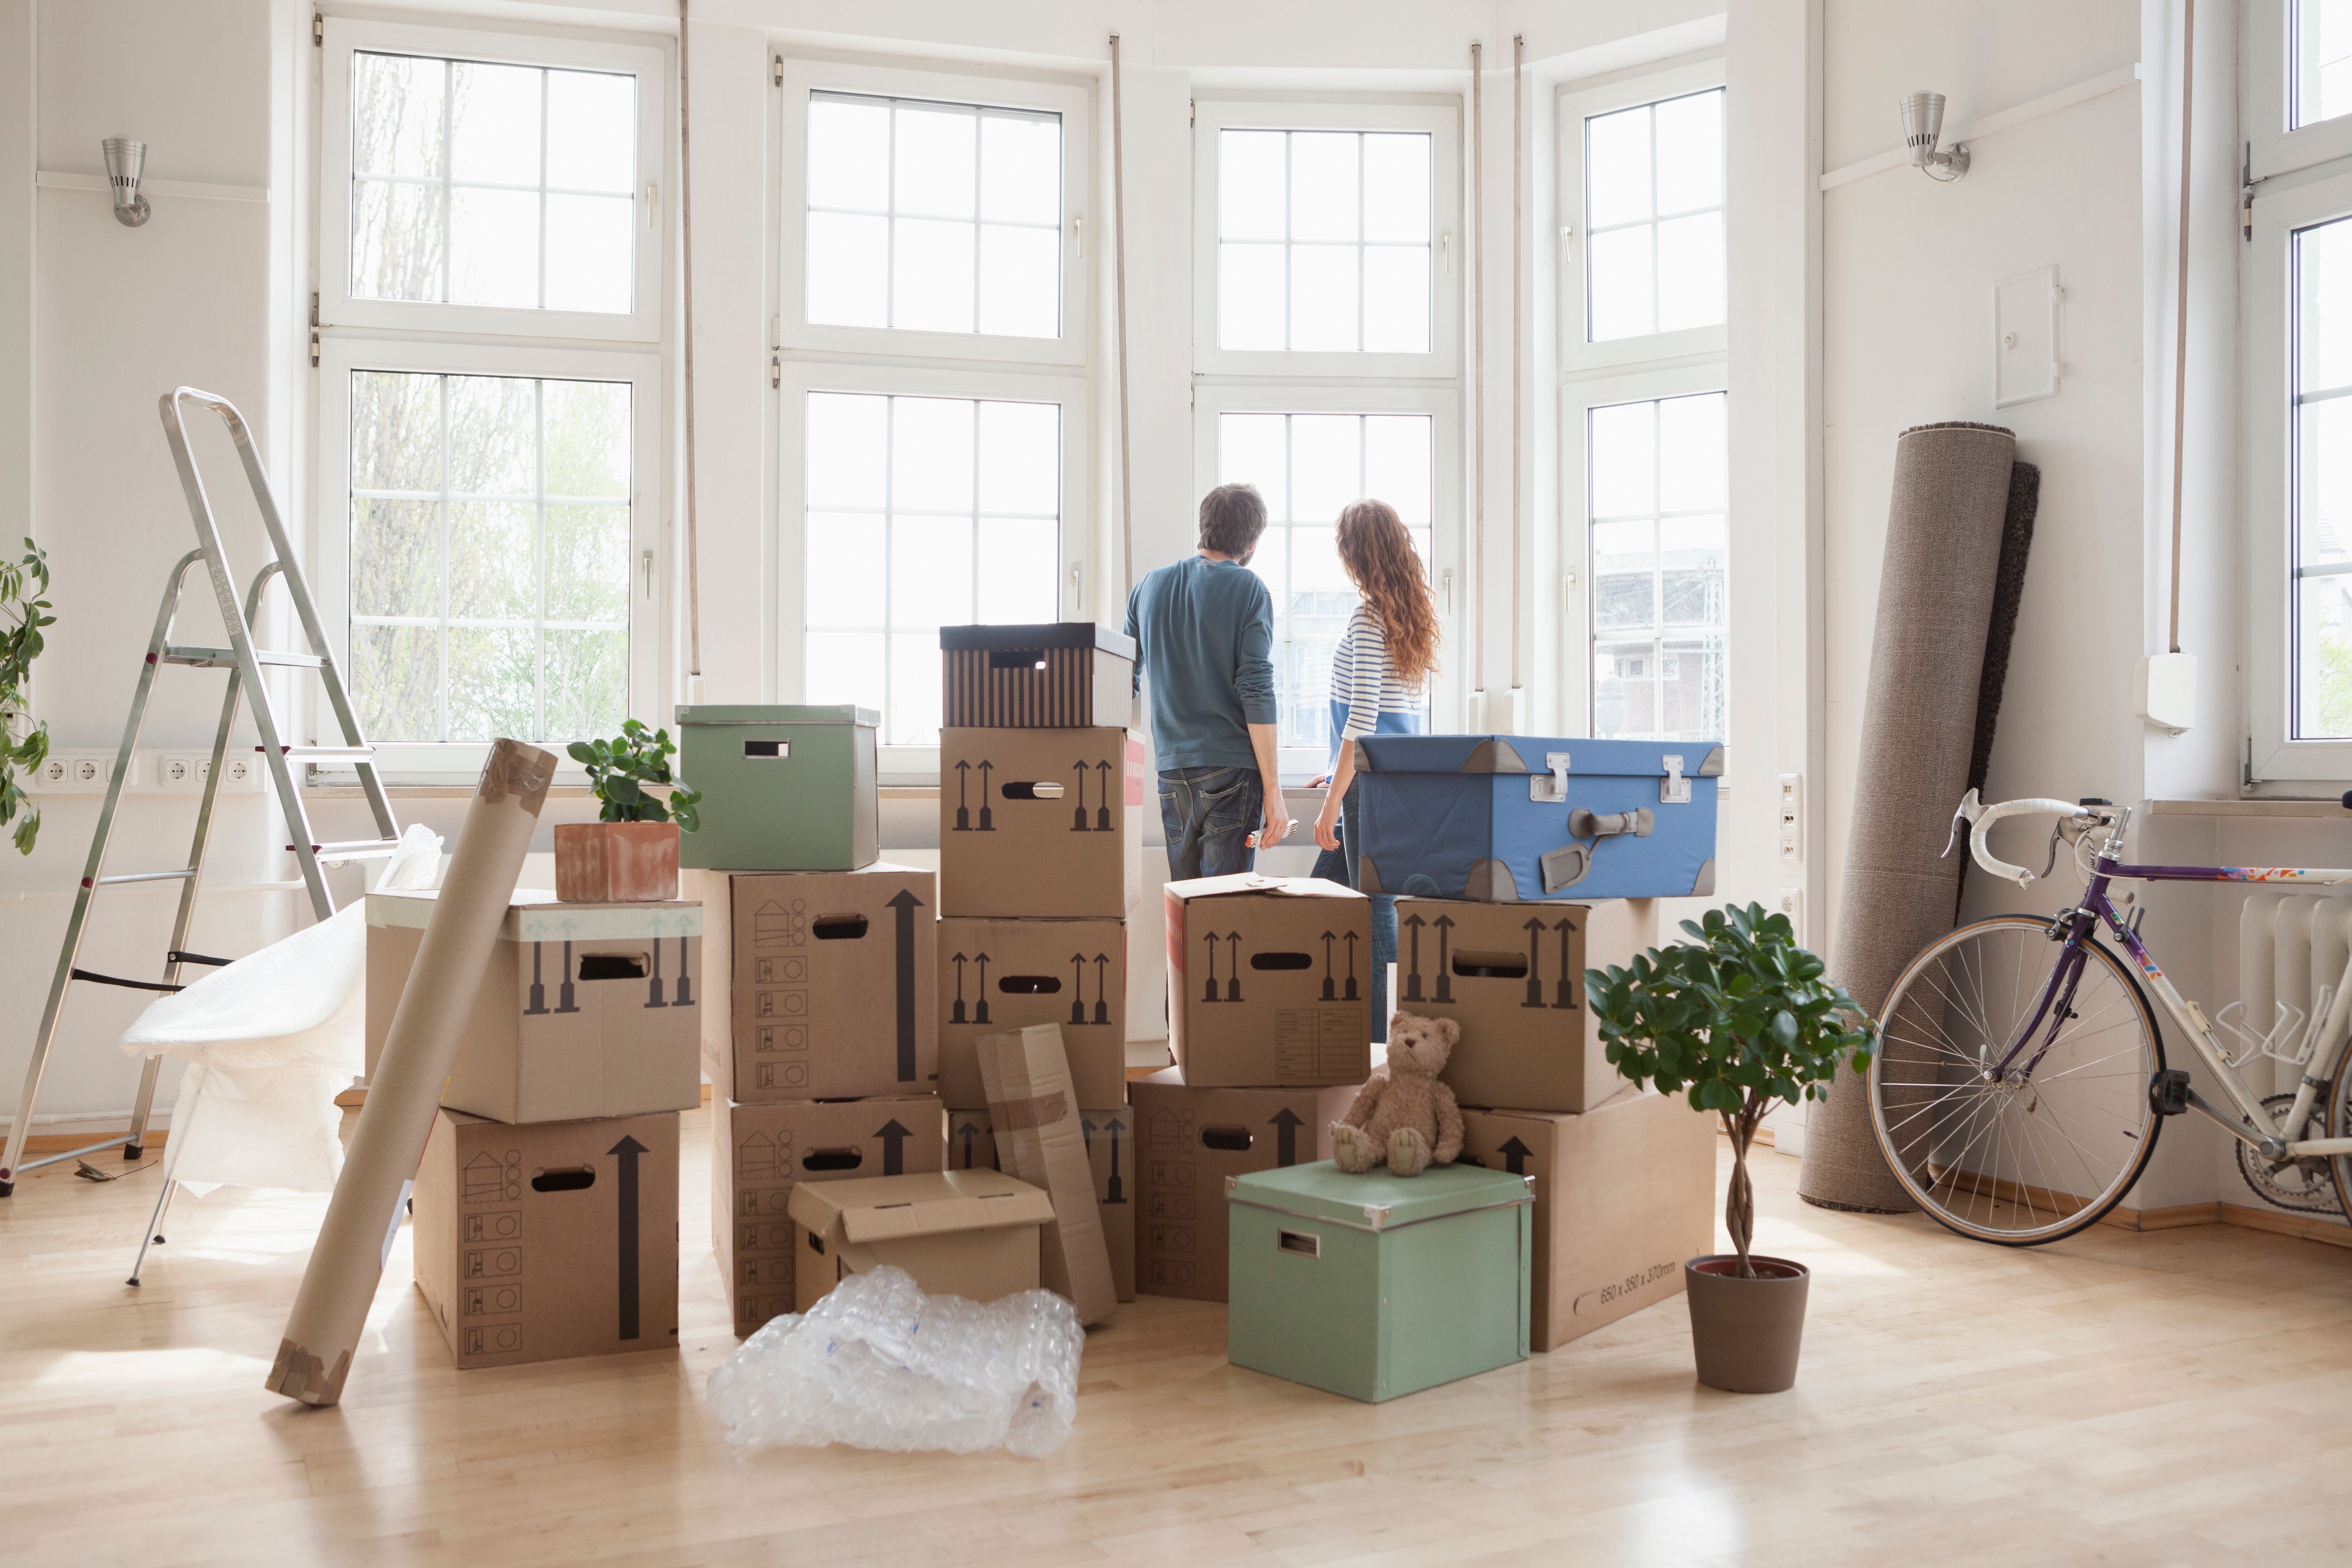 Una pareja y varias cajas en una habitación | Foto: Getty Images